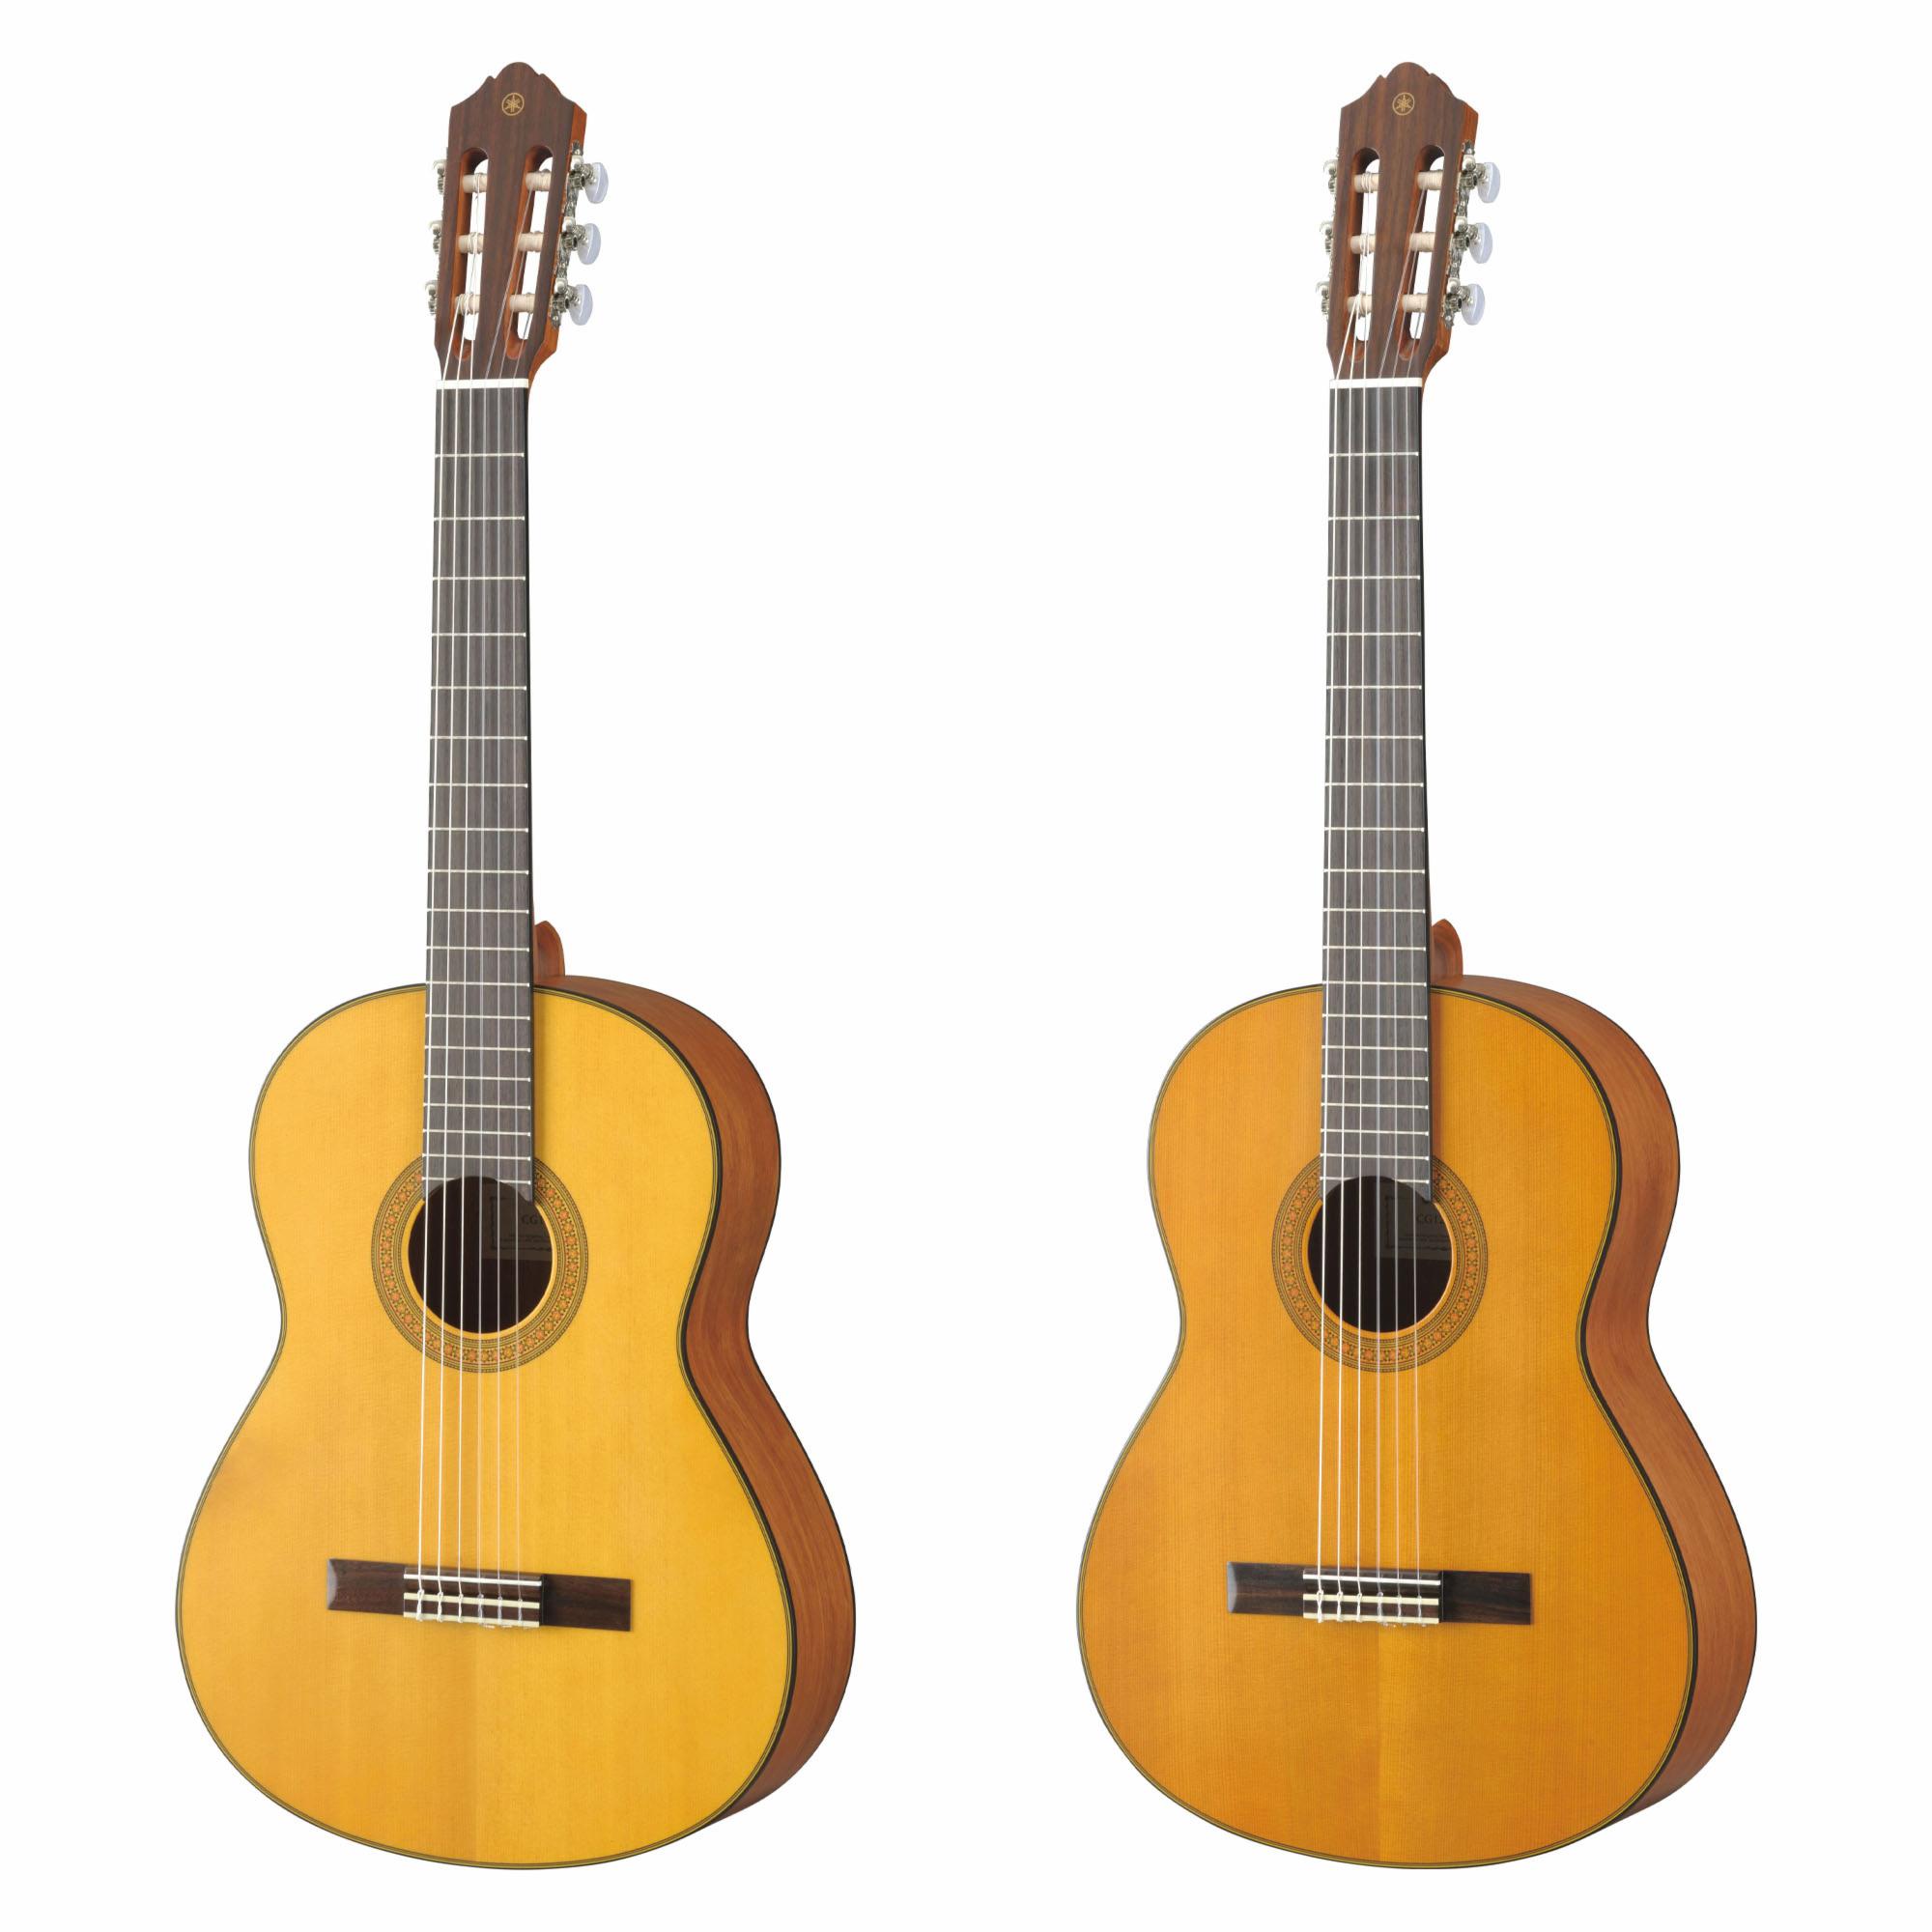 Yamaha Concert Series (CG122MS) Classical Guitar